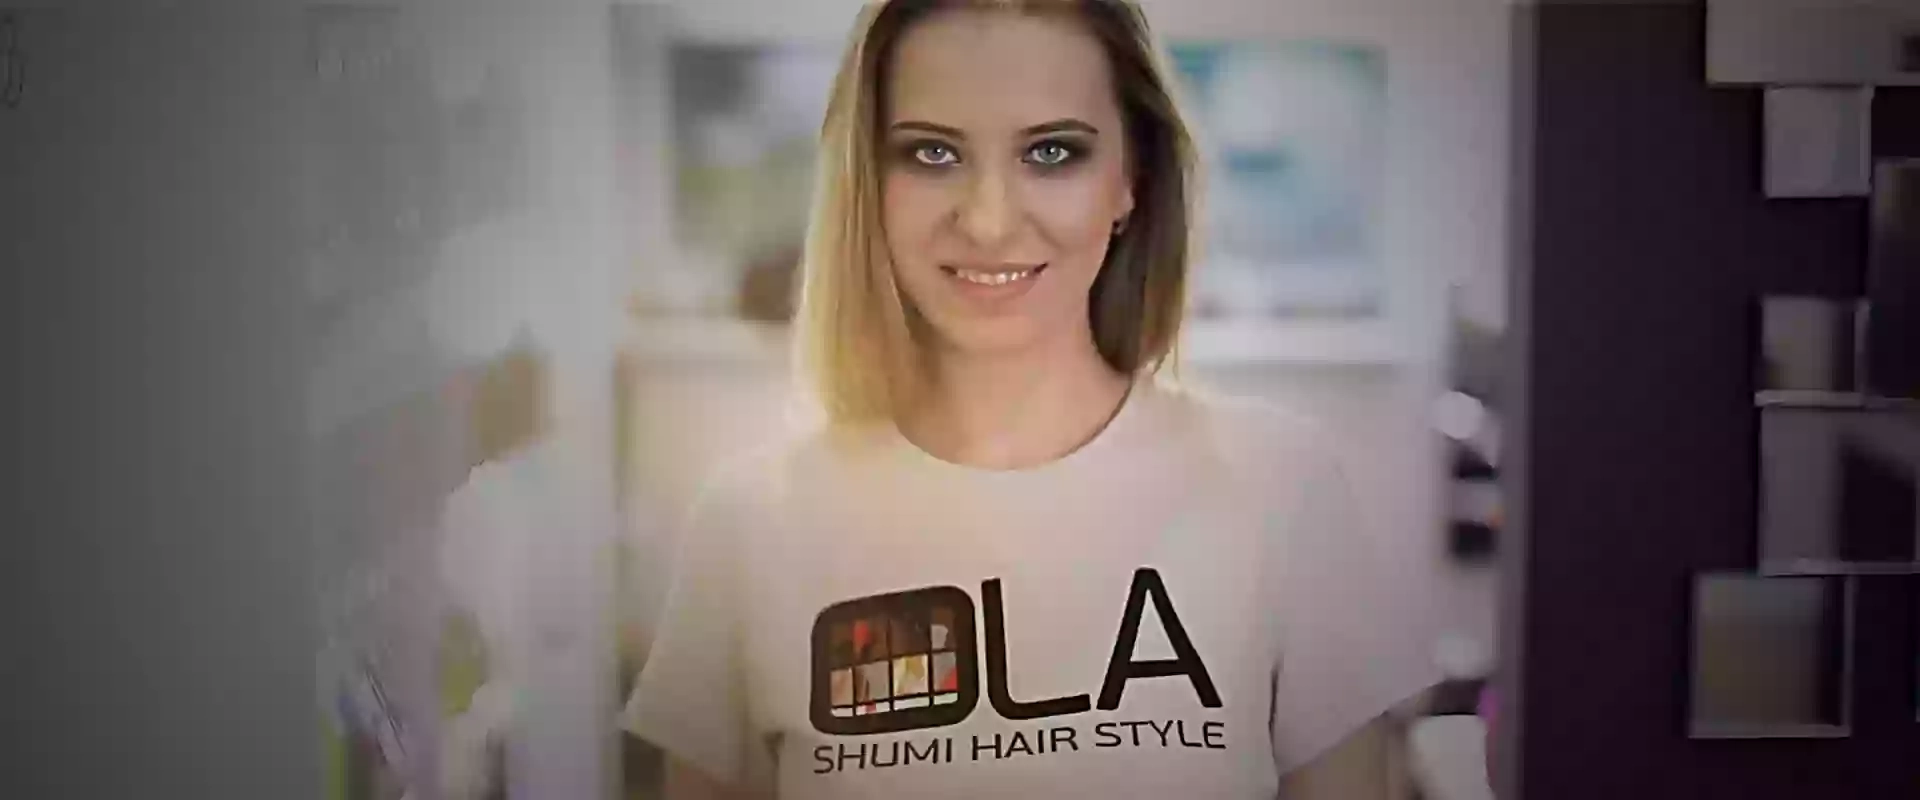 OLA SHUMI HAIR STYLE